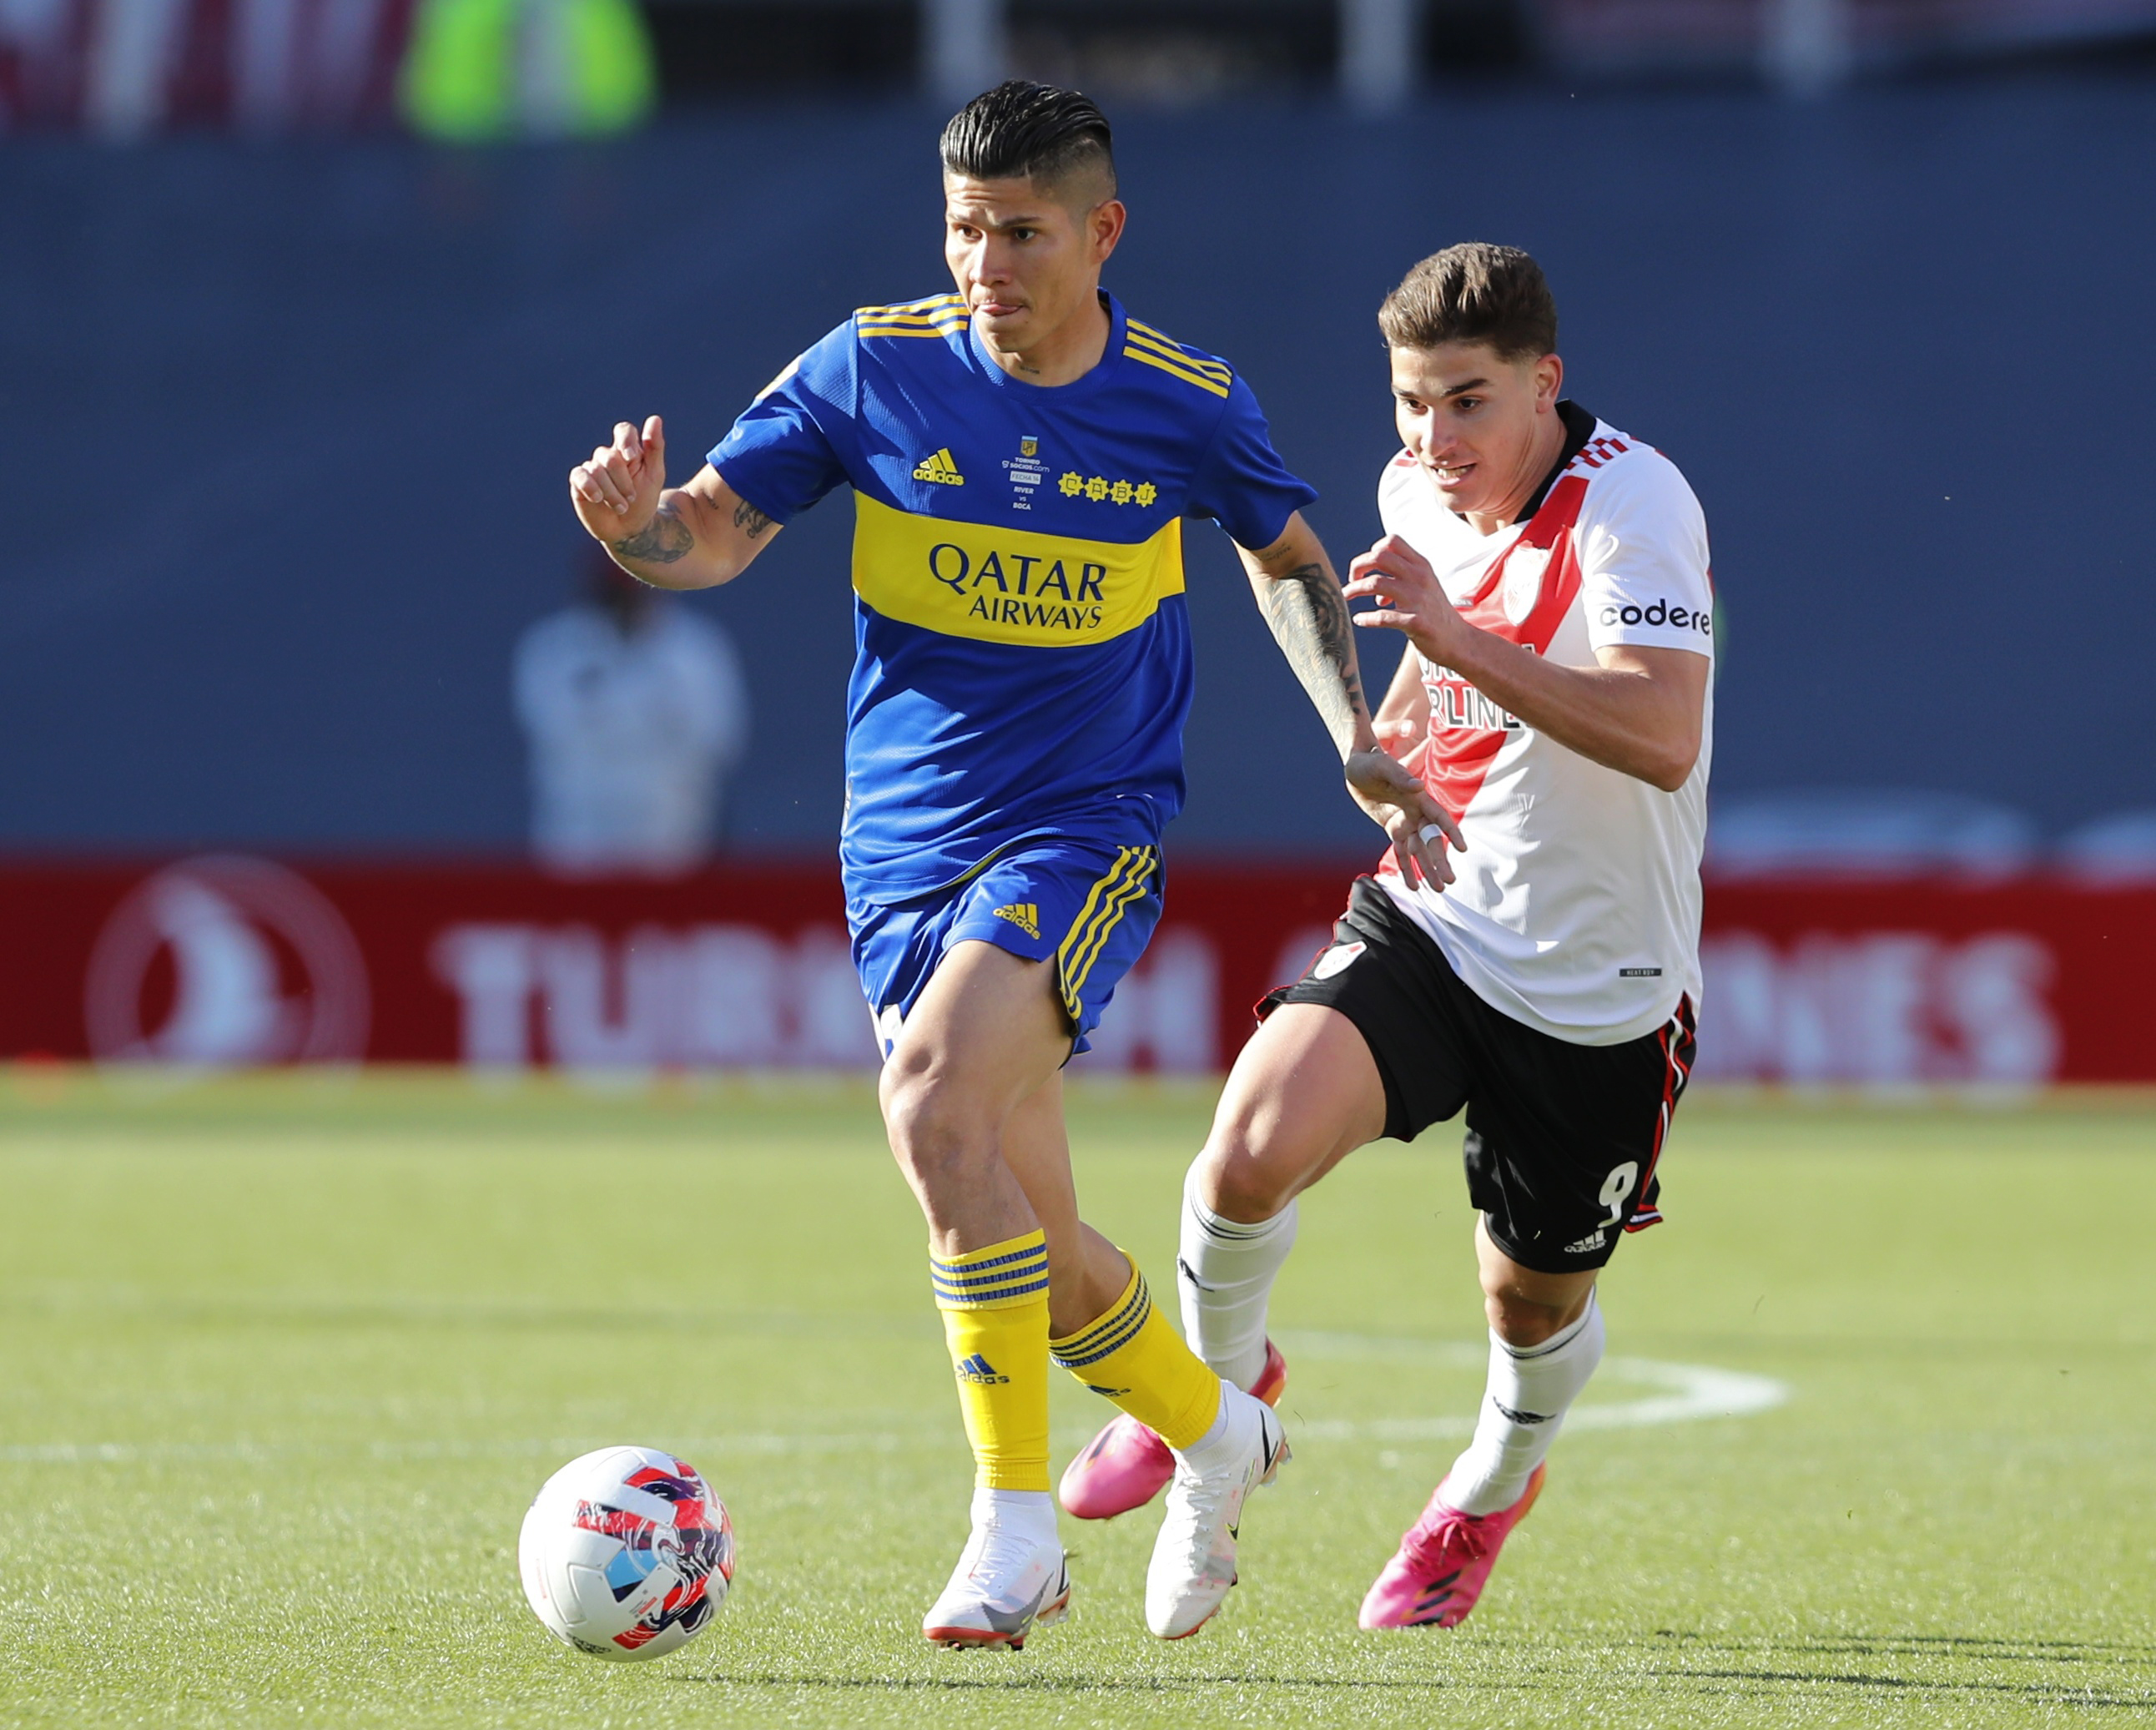 Un colombiano regresará de Europa a Boca Juniors: las directivas esperan su llegada